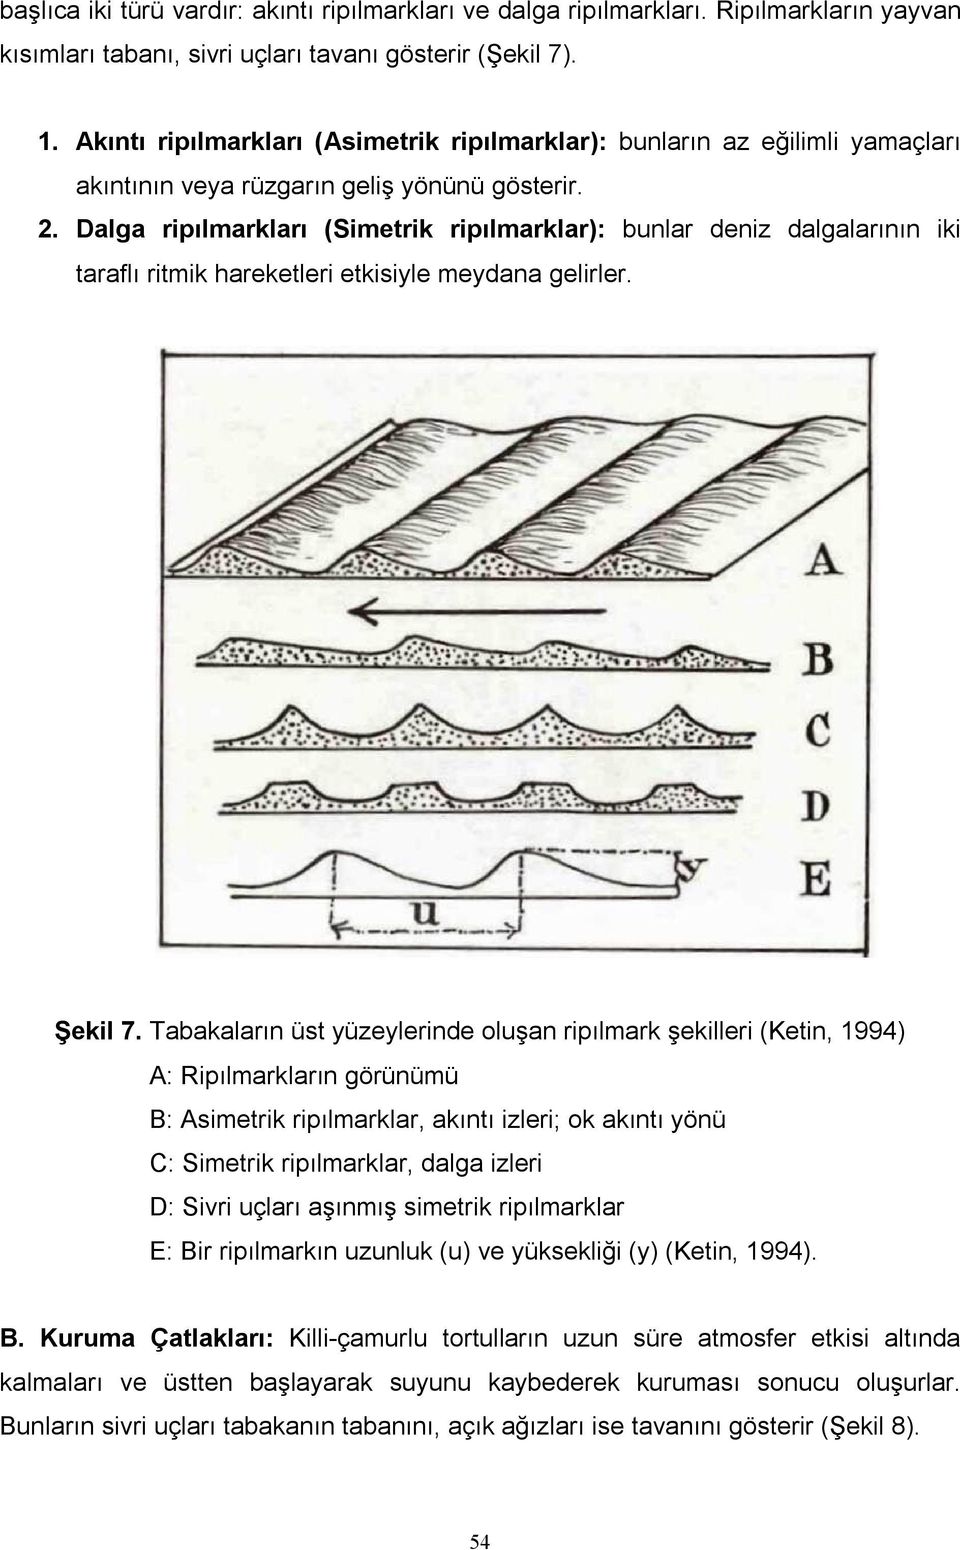 Dalga ripılmarkları (Simetrik ripılmarklar): bunlar deniz dalgalarının iki taraflı ritmik hareketleri etkisiyle meydana gelirler. Şekil 7.